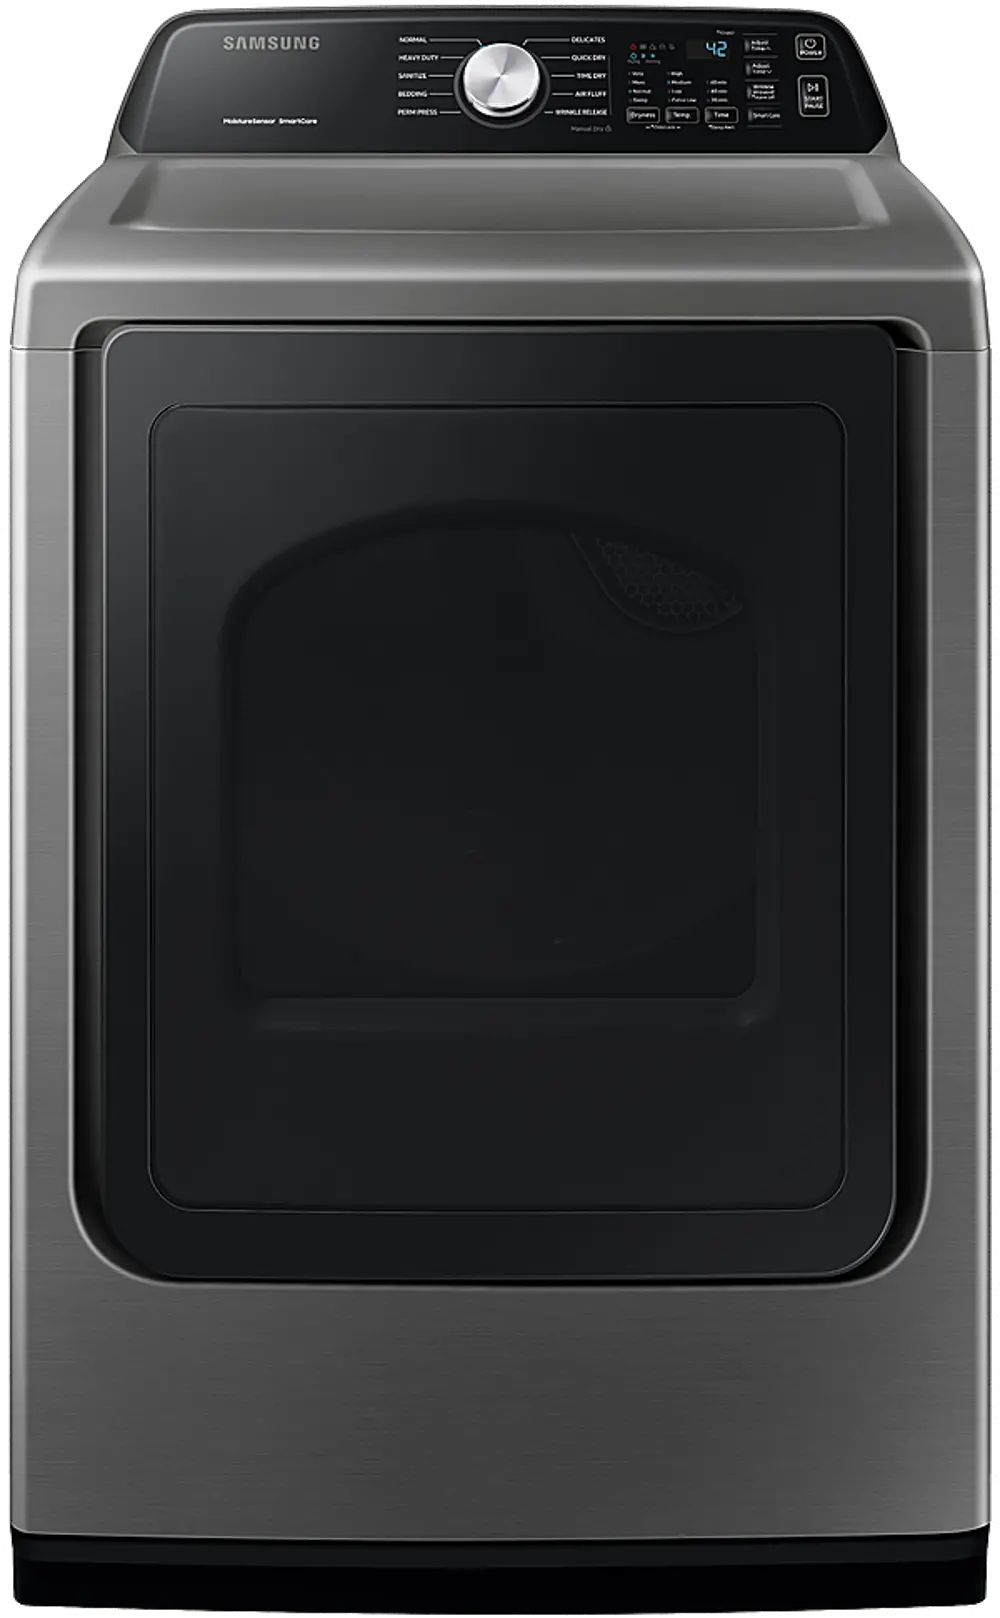 DVG45T3400P Samsung Gas Dryer - Platinum 7.4 cu. ft.-1